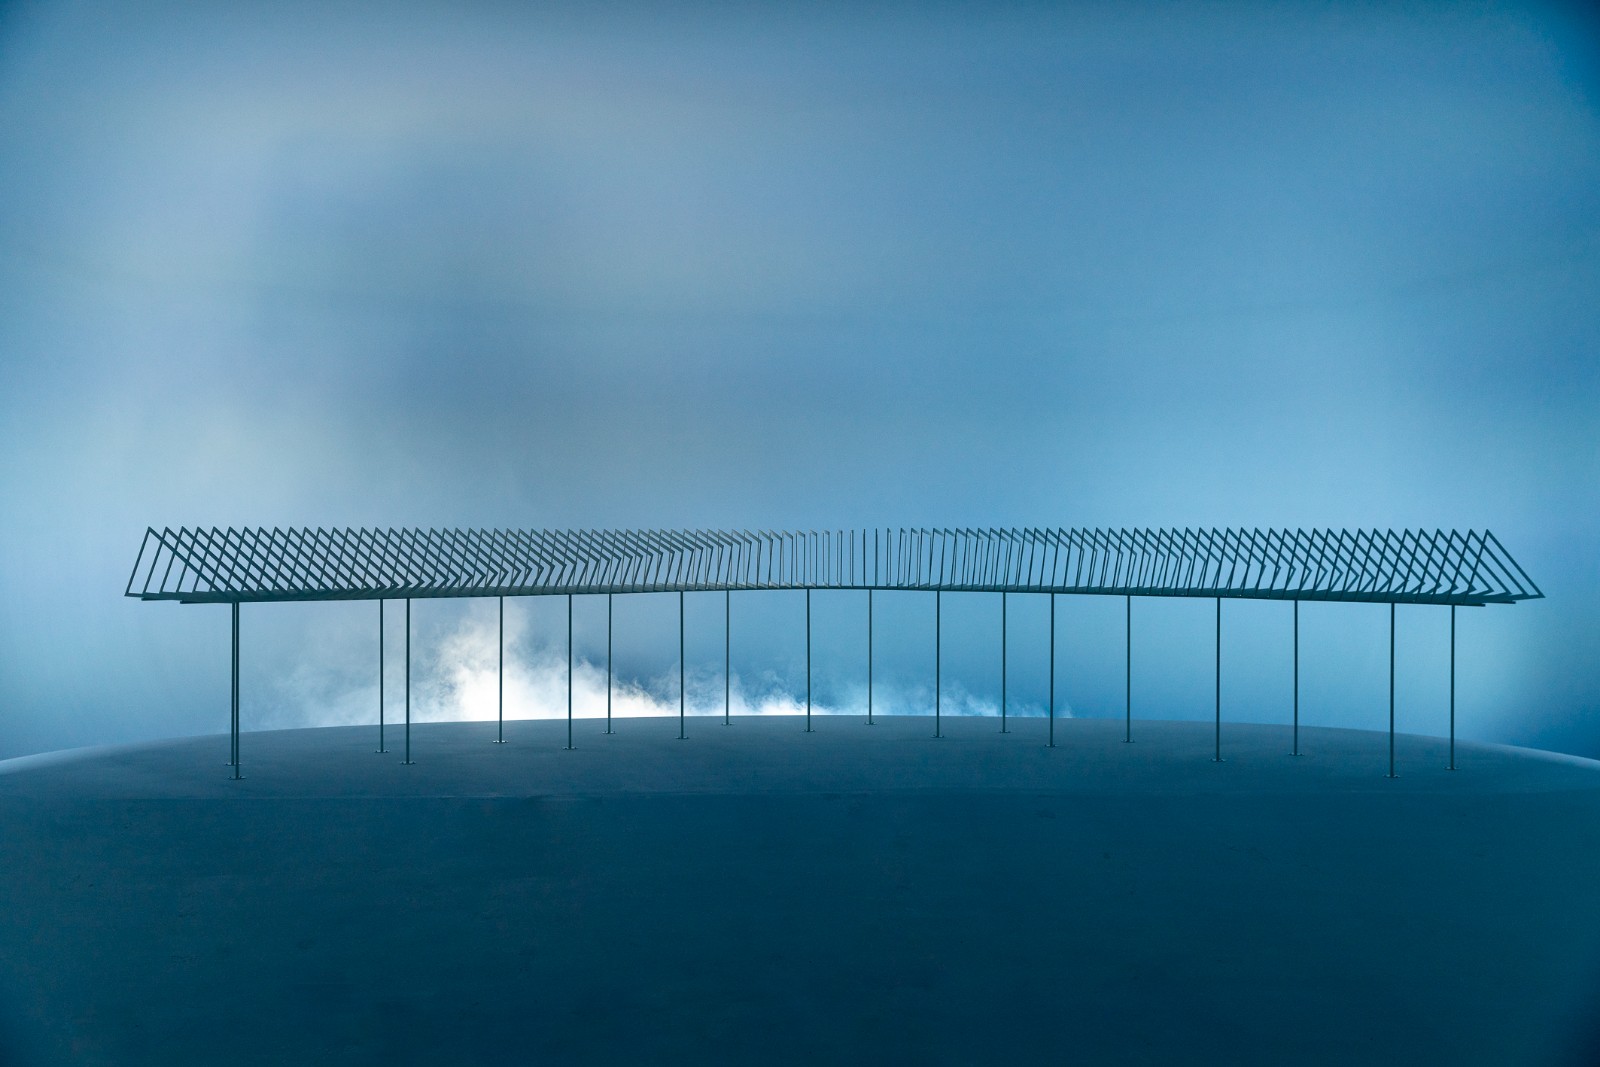 Alison Brooks Architects, ReCasting, 2018. Photo by Andrea AvezzÃ¹. Courtesy La Biennale di Venezia